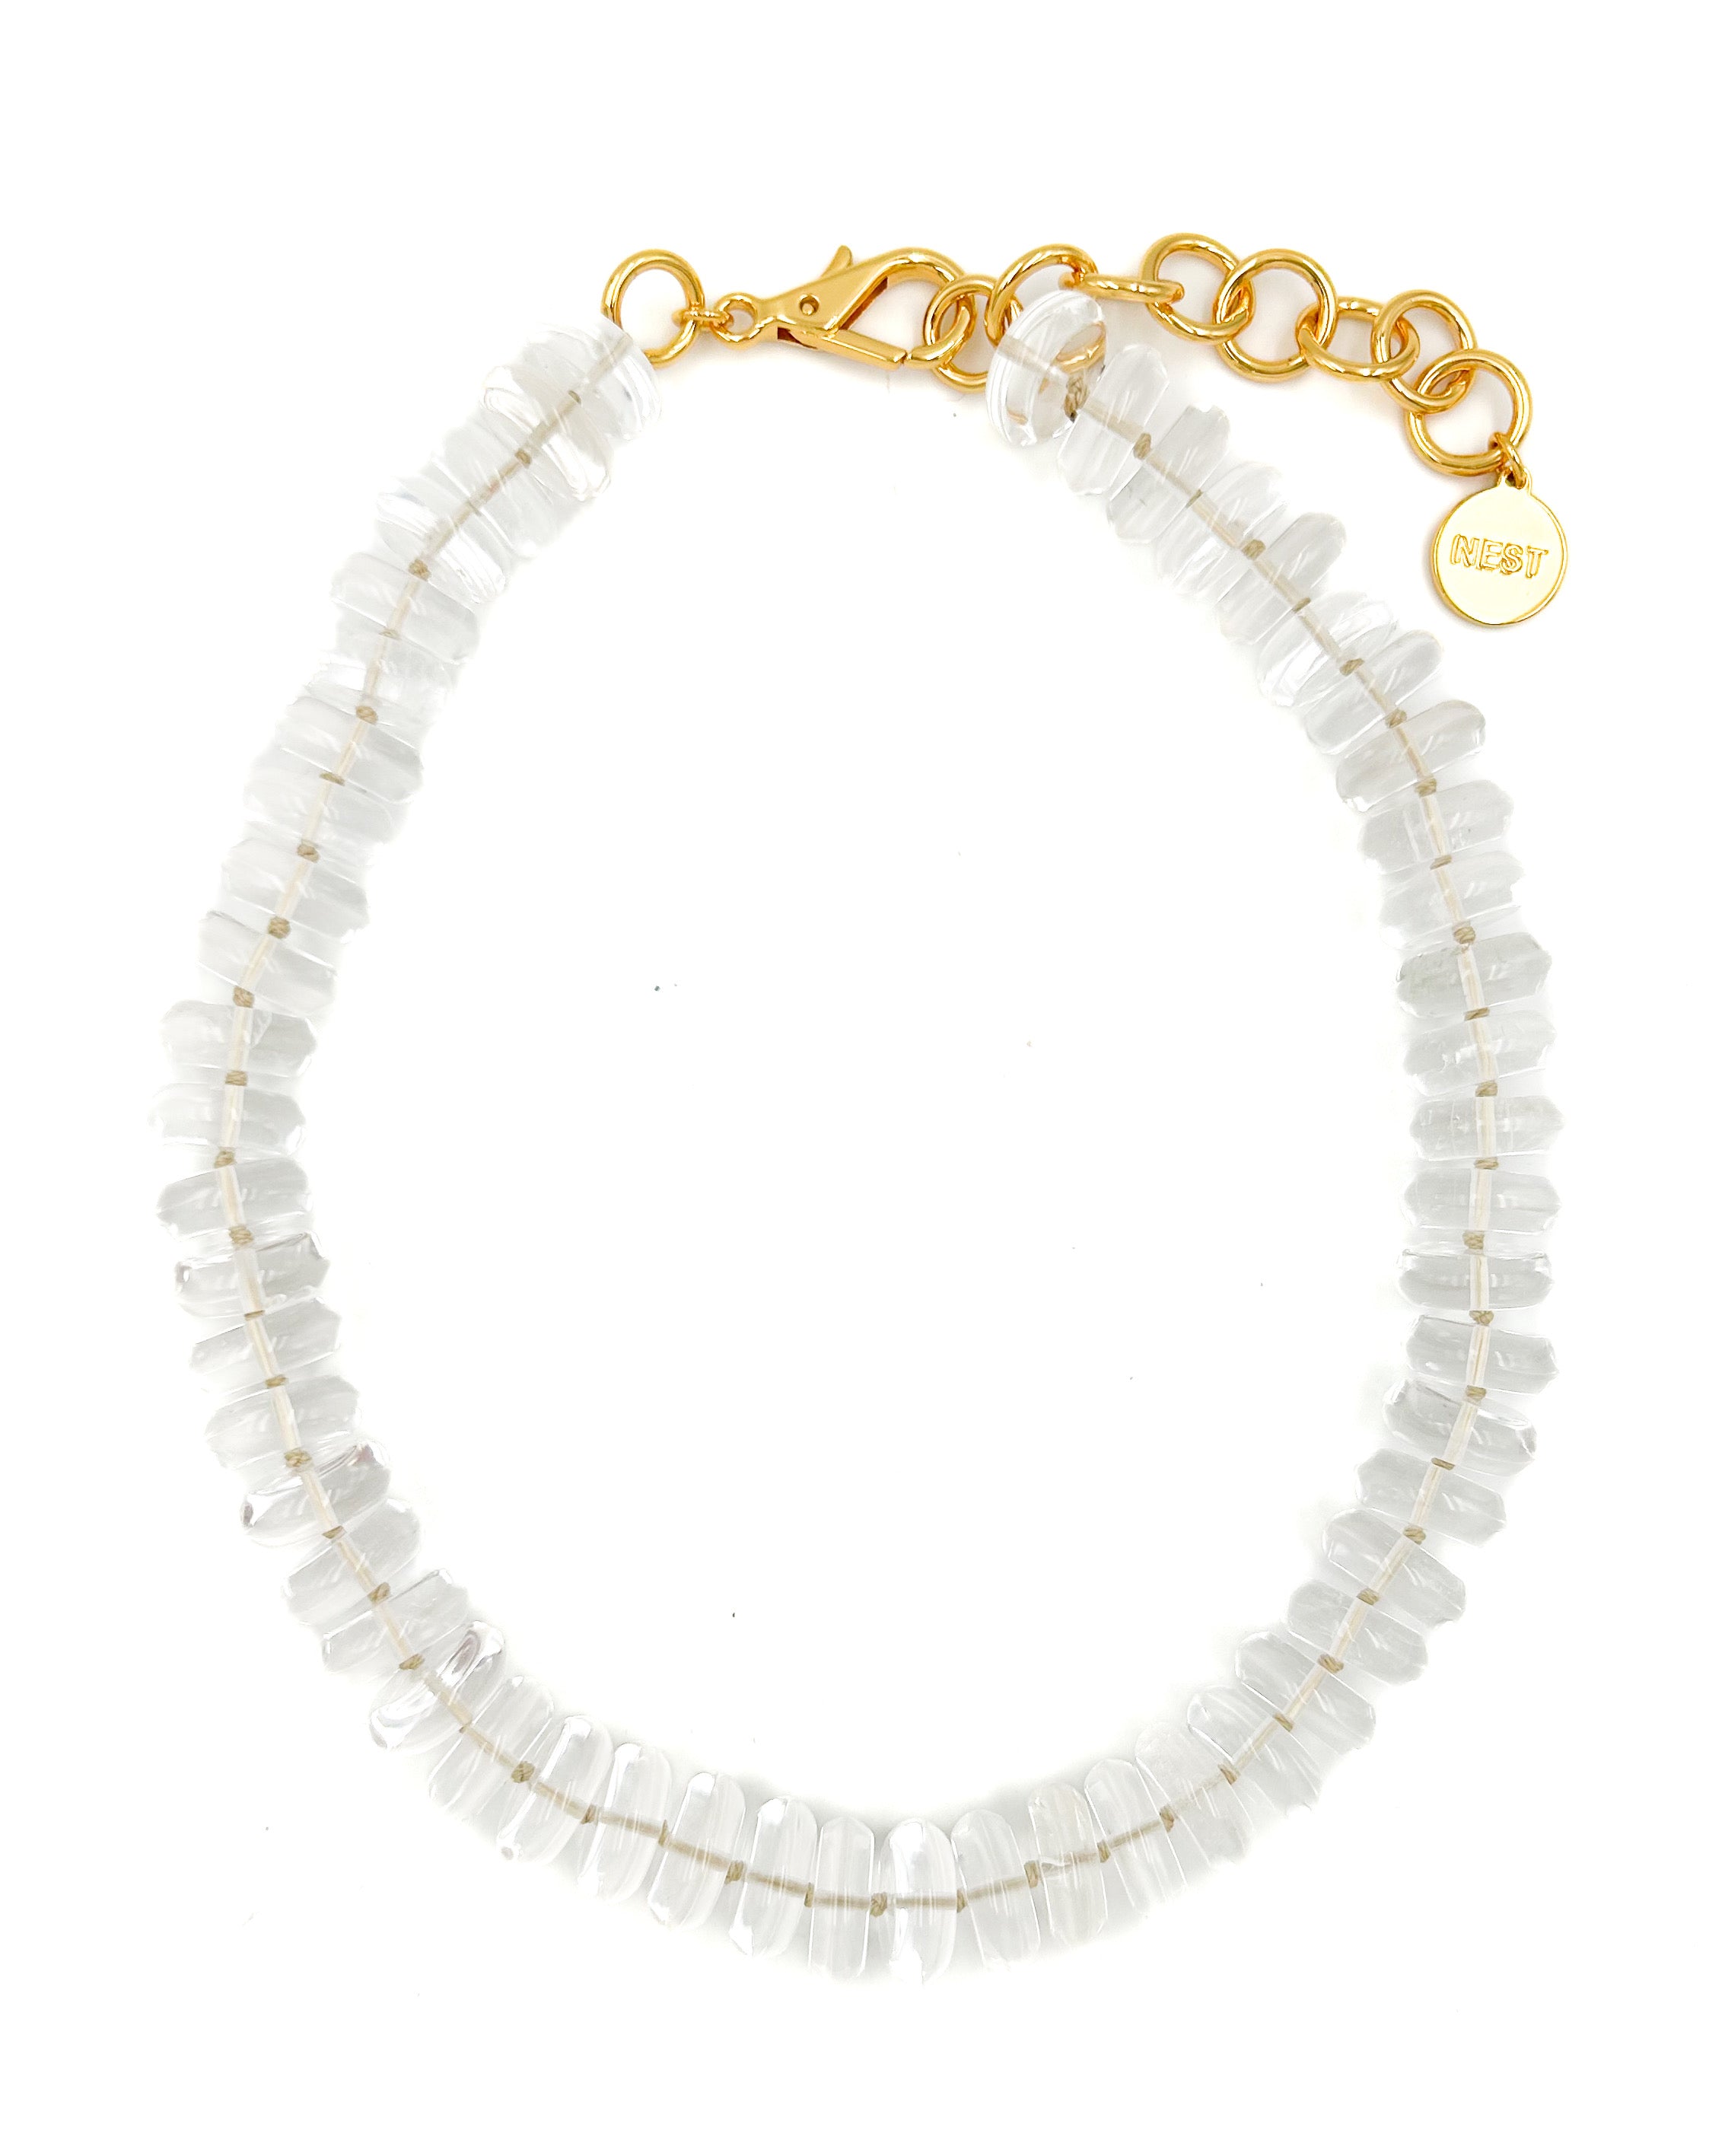 Vintage Faceted Rock Crystal Beaded Necklace 14K Gold Clasp - Estate | eBay